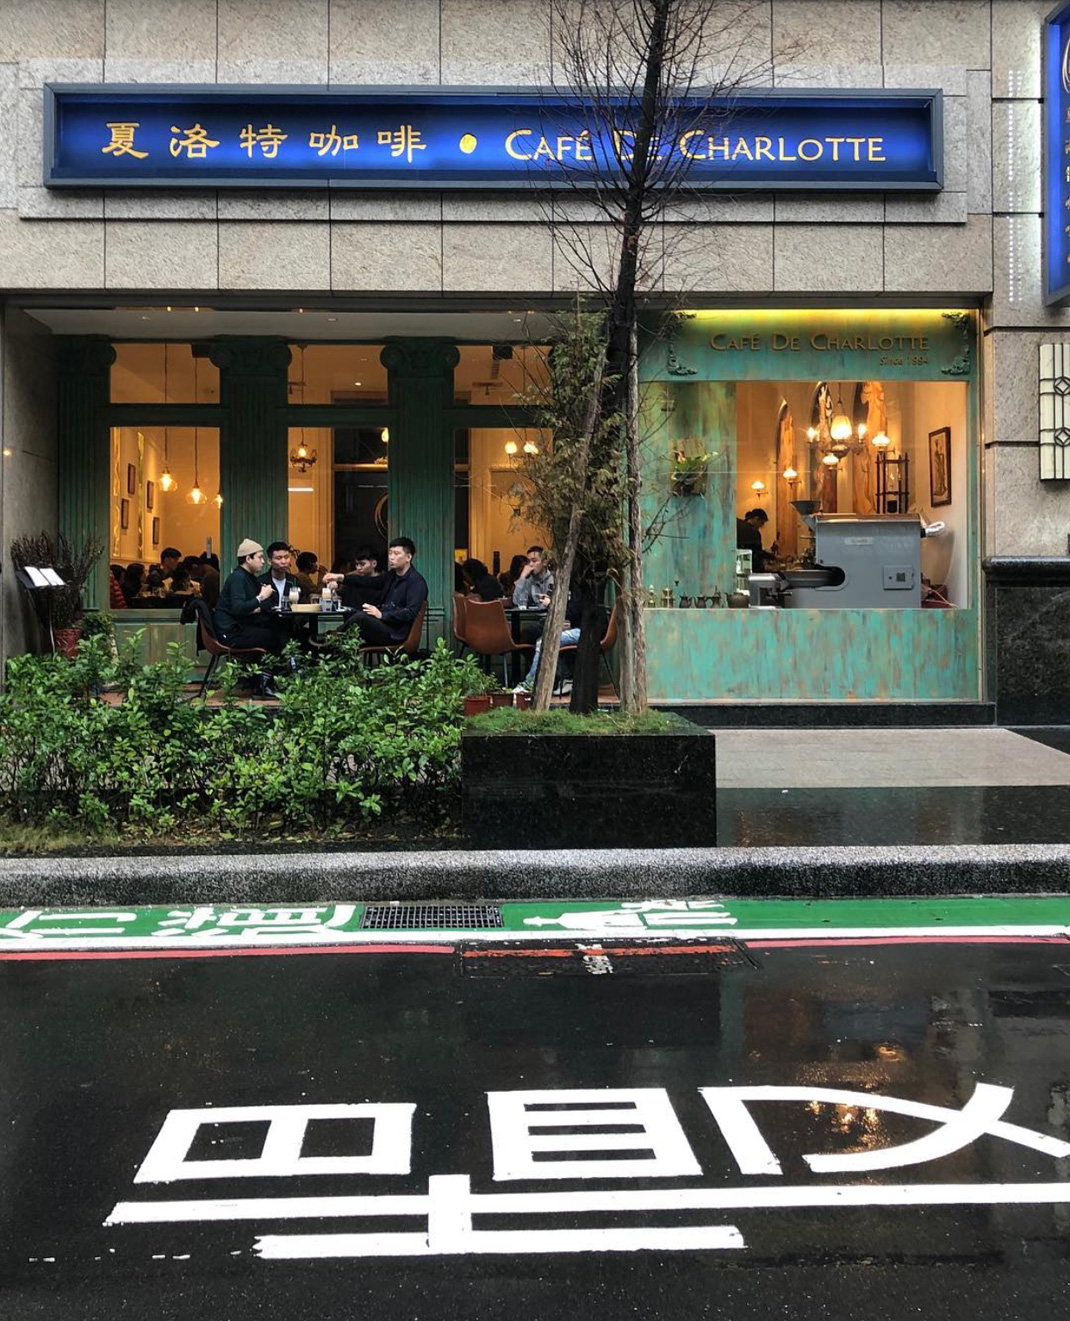 夏洛特咖啡 台湾 咖啡店 复古 logo设计 vi设计 空间设计